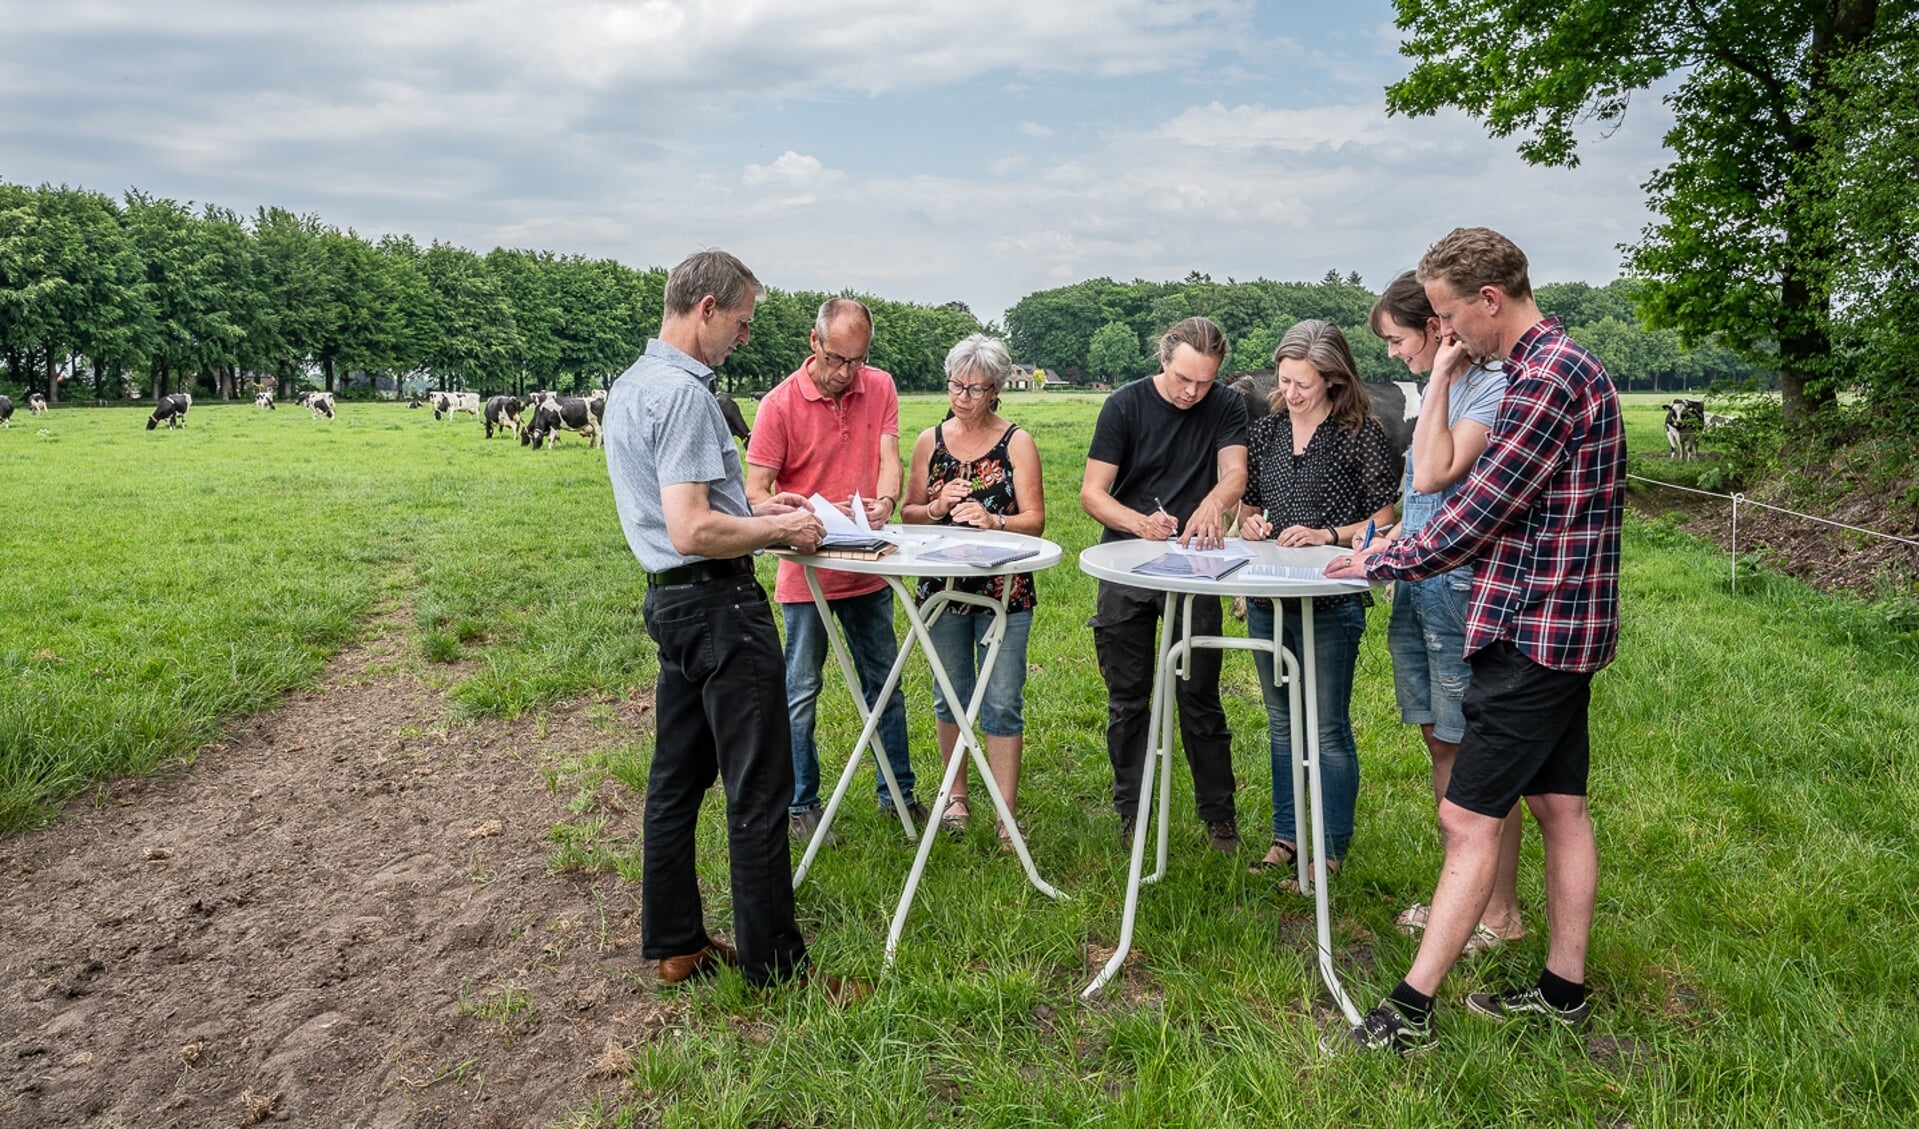 Het tekenen van de koopovereenkomst in Groot Dochteren gebeurde onder het toeziend oog van koeien. Foto: Martine Siemens